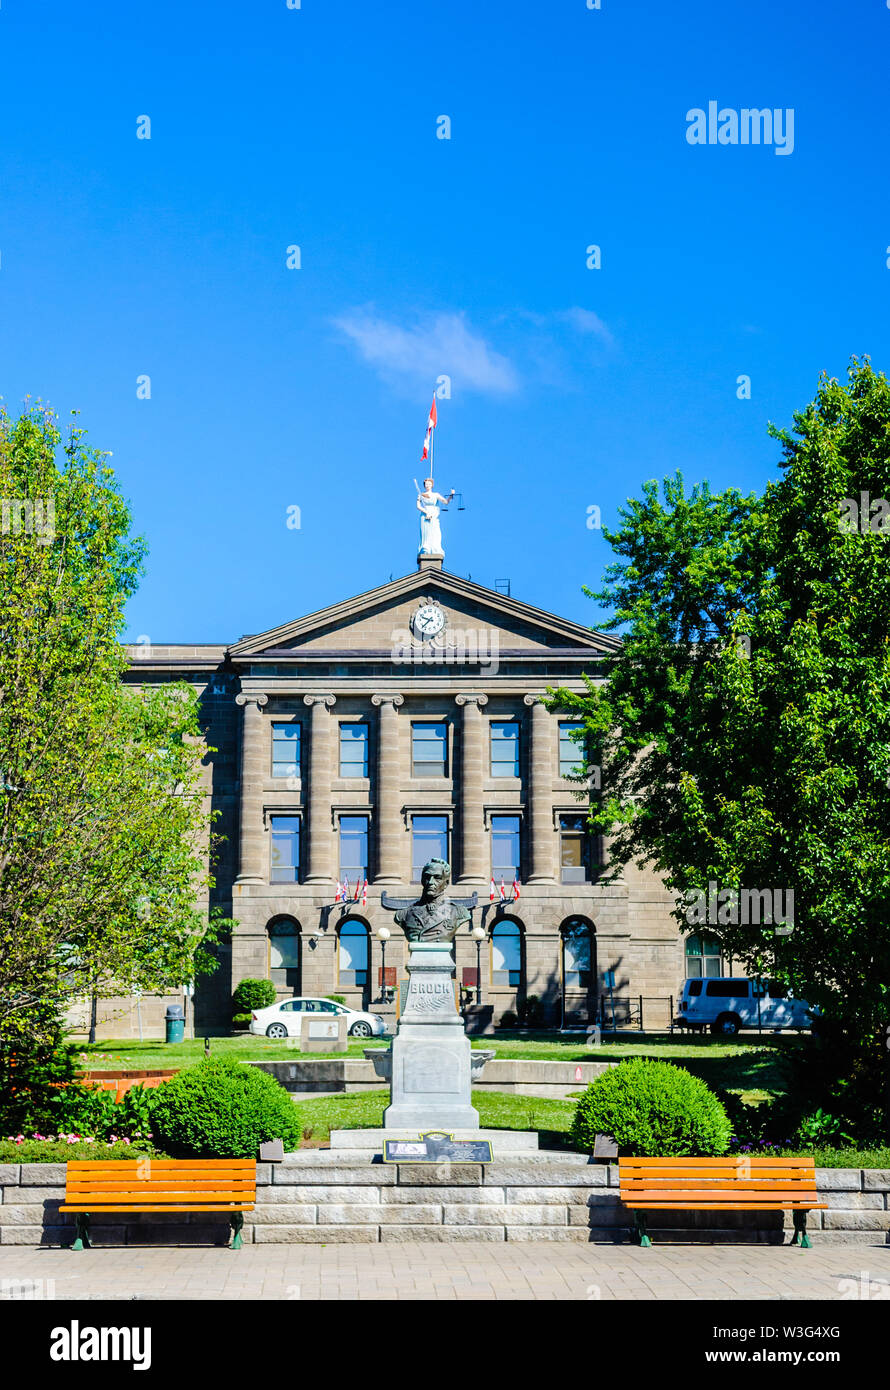 BROCKVILLE, Ontario, Canada - 19 giugno 2018: la county court house si affaccia su di un monumento di Sir Isaac Brock, ed è un sito storico. Foto Stock